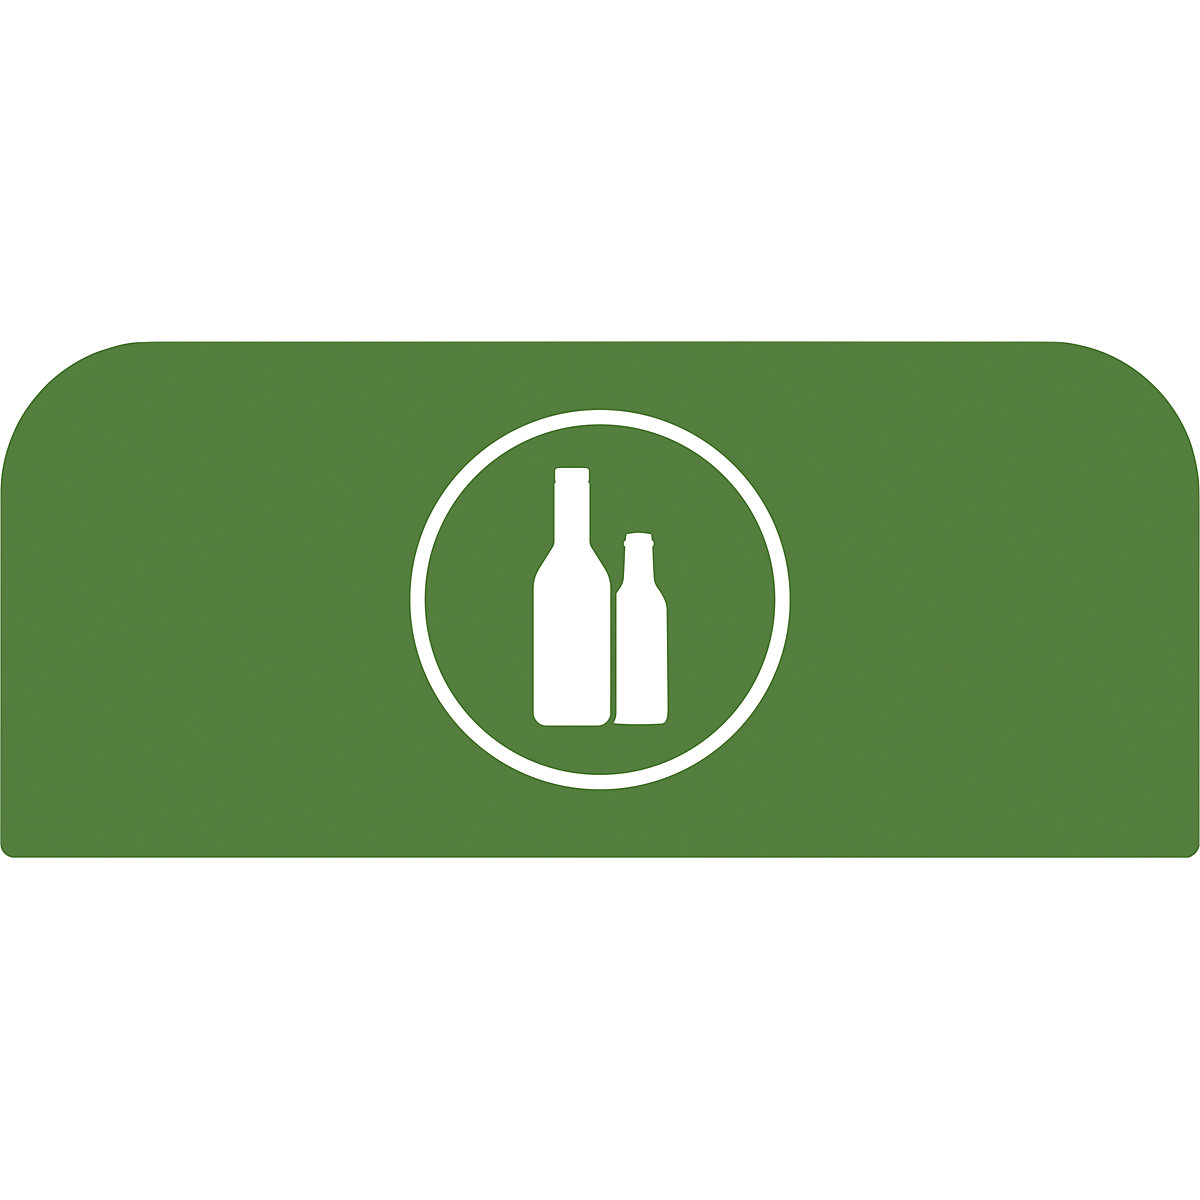 Označevalna tablica Configure™ – Rubbermaid, za 57-l zaboj, zelene barve-4